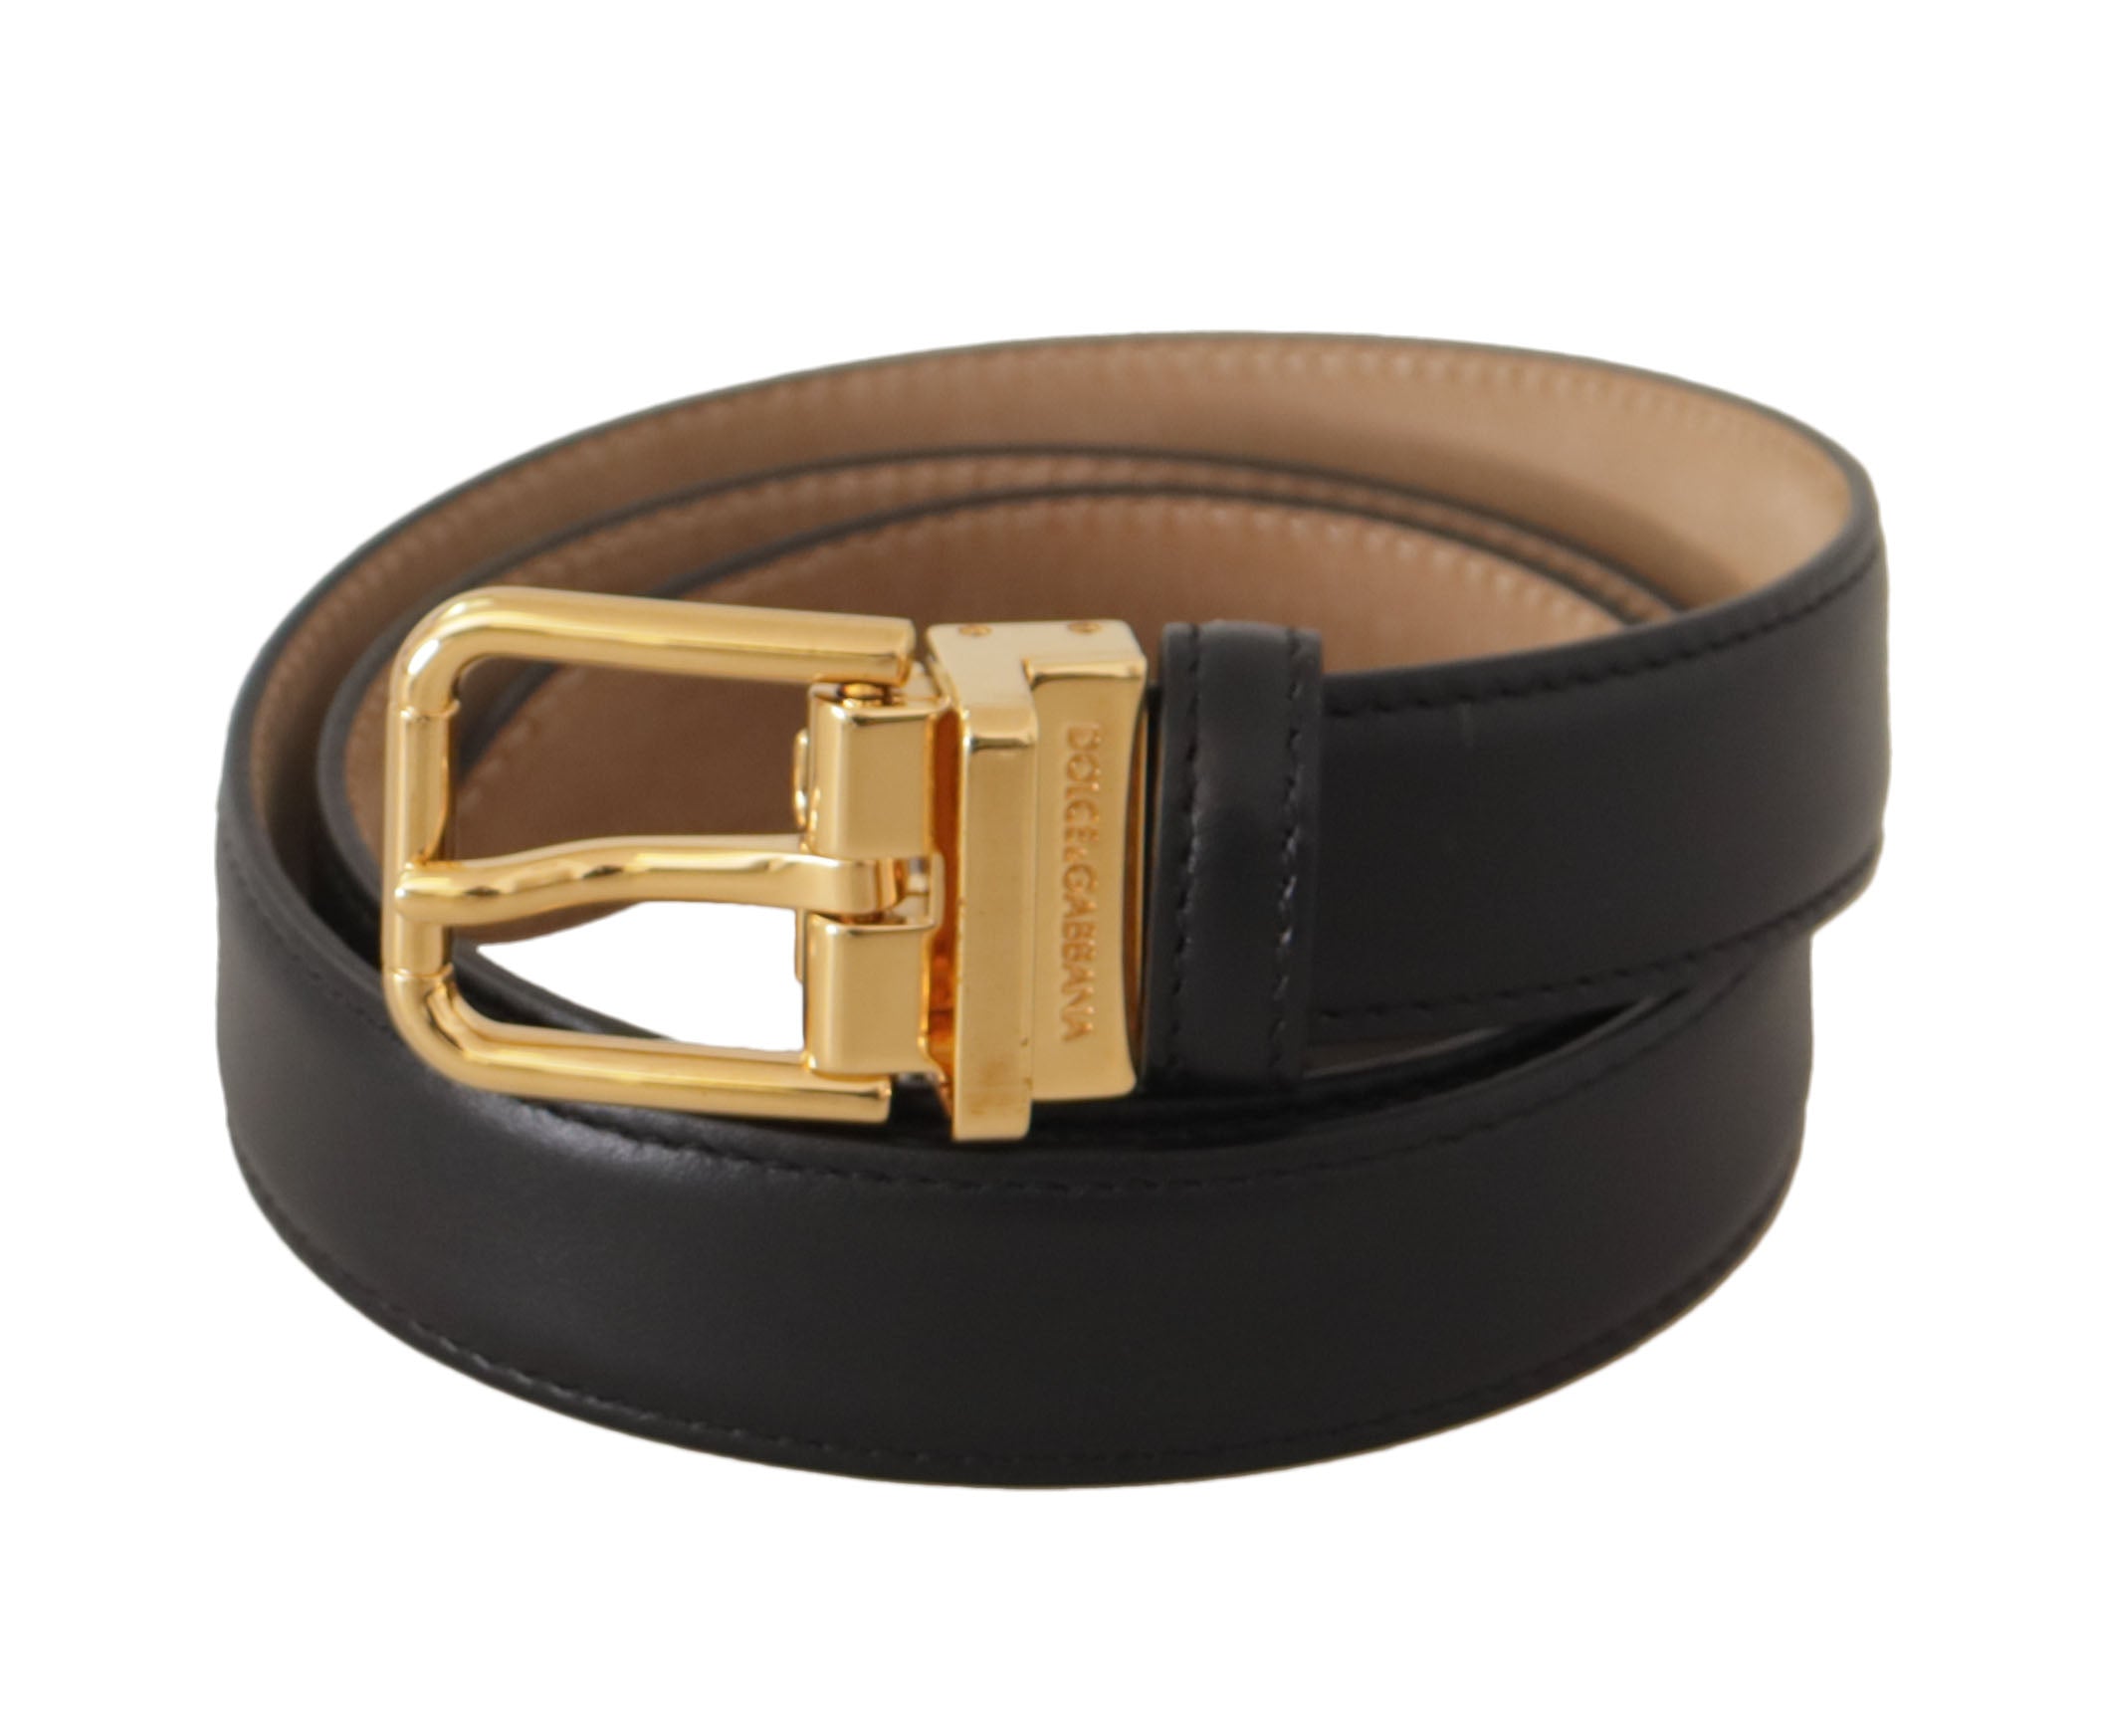 Dolce & Gabbana Elegant Black Leather Belt with Engraved Buckle